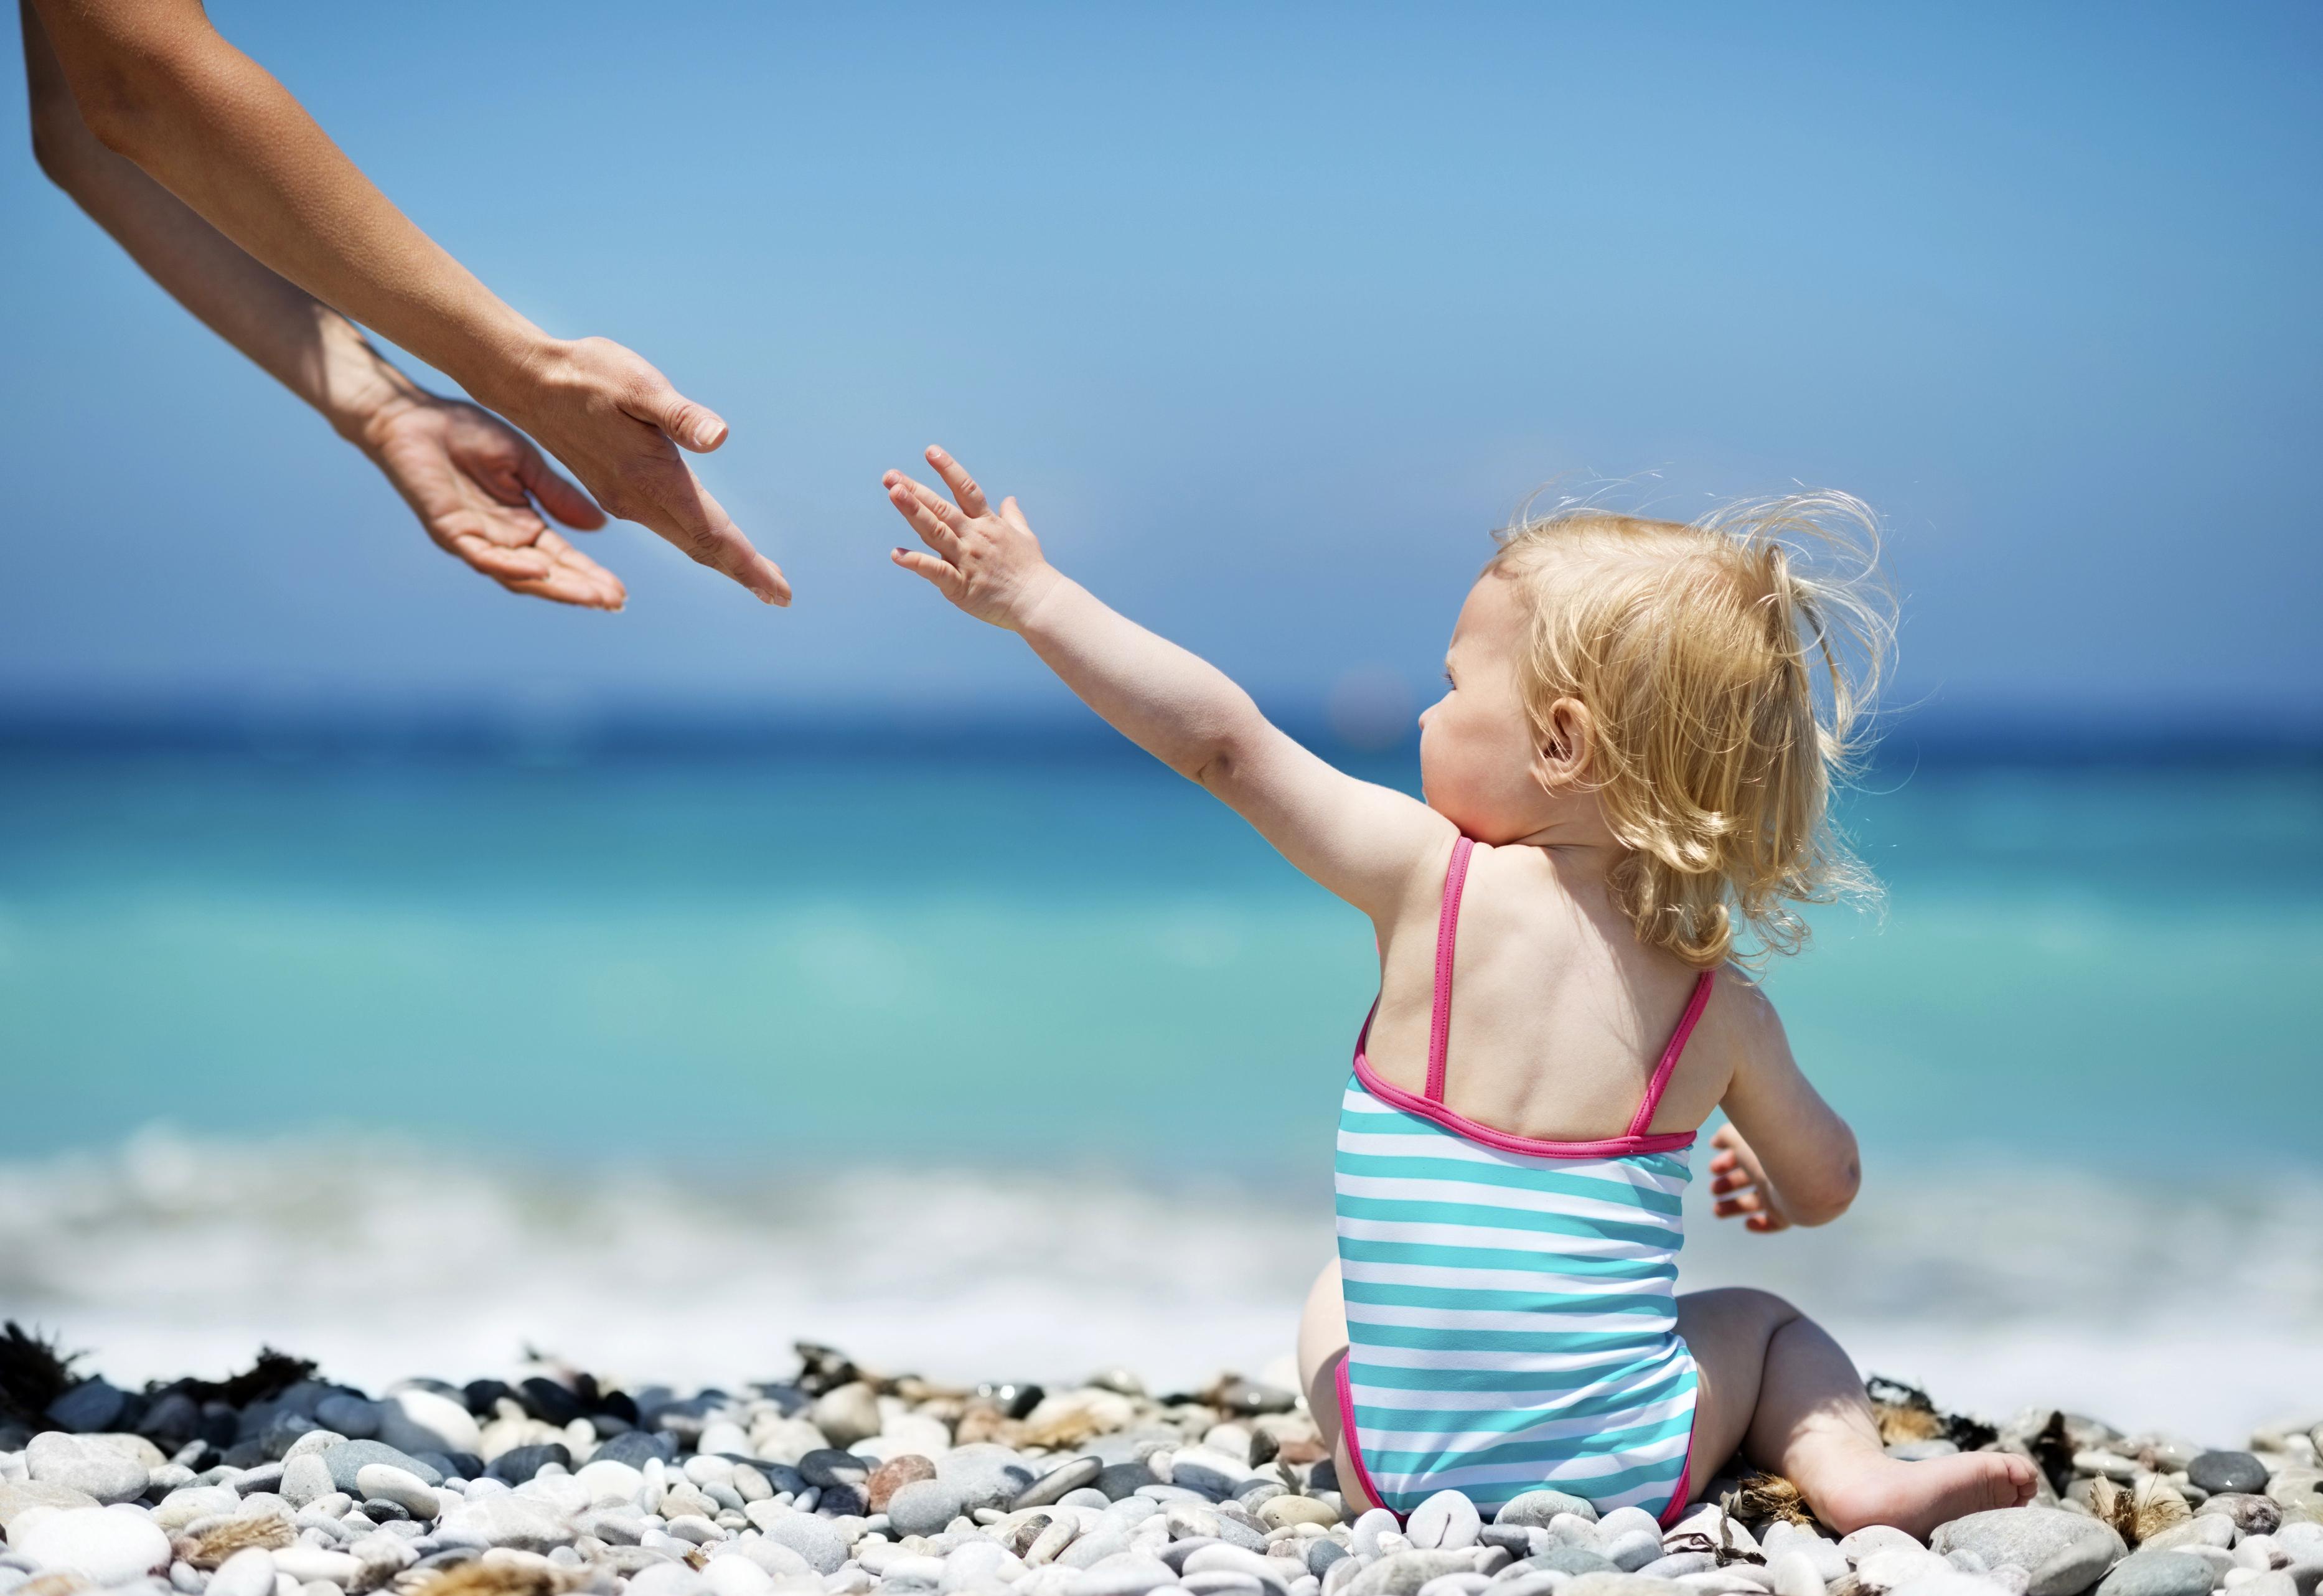 La înot cu cei mici: 5 reguli pentru siguranța copilului tău